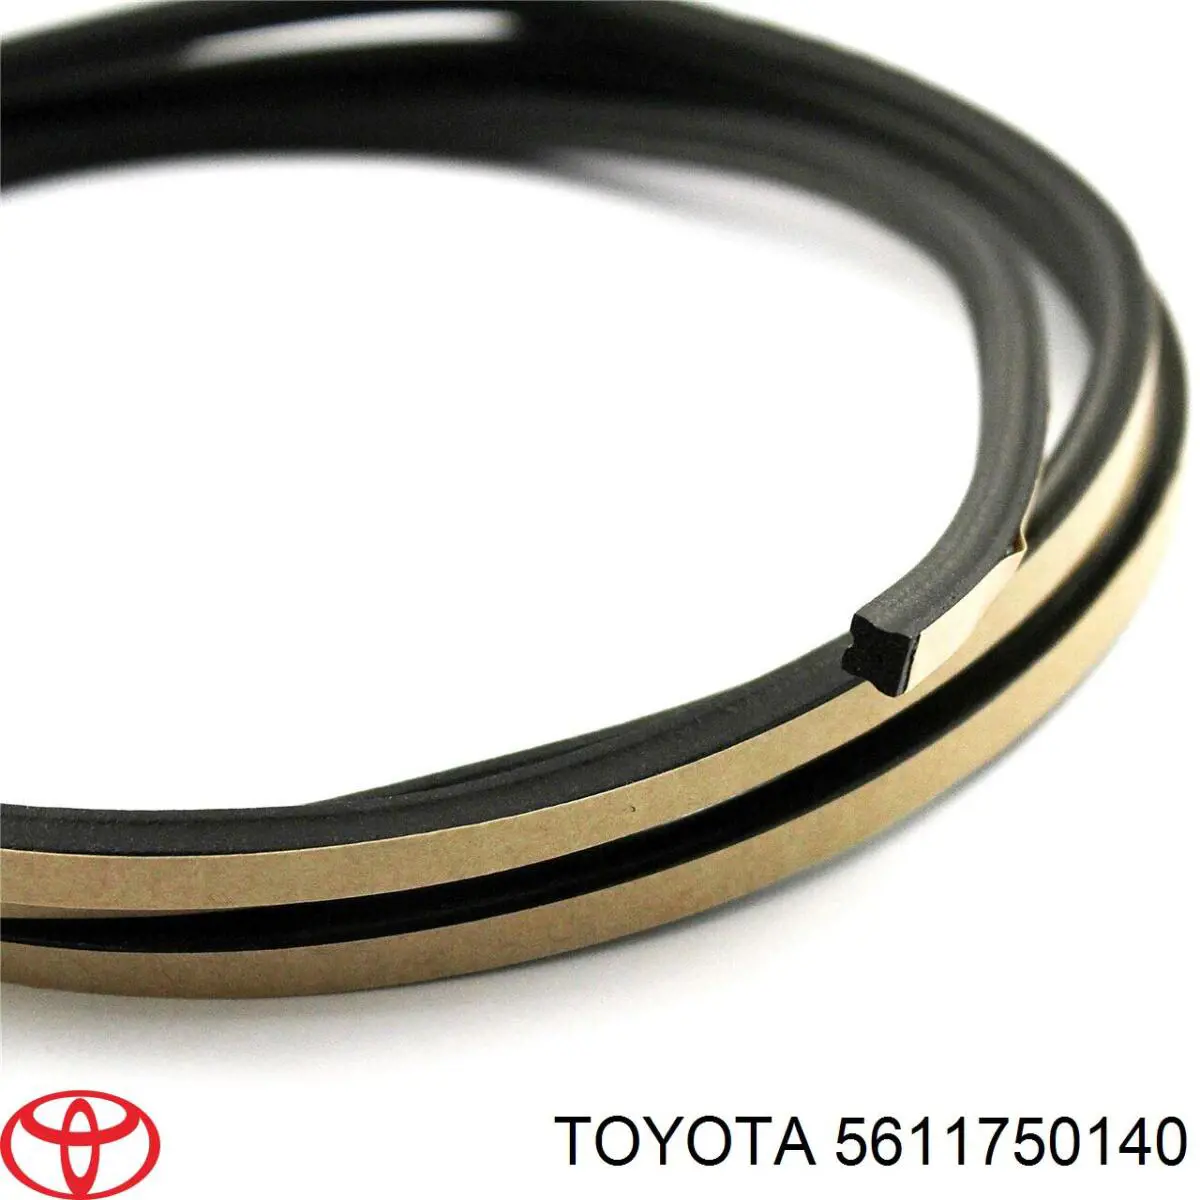 Moldura inferior de pára-brisas para Toyota Camry (V40)